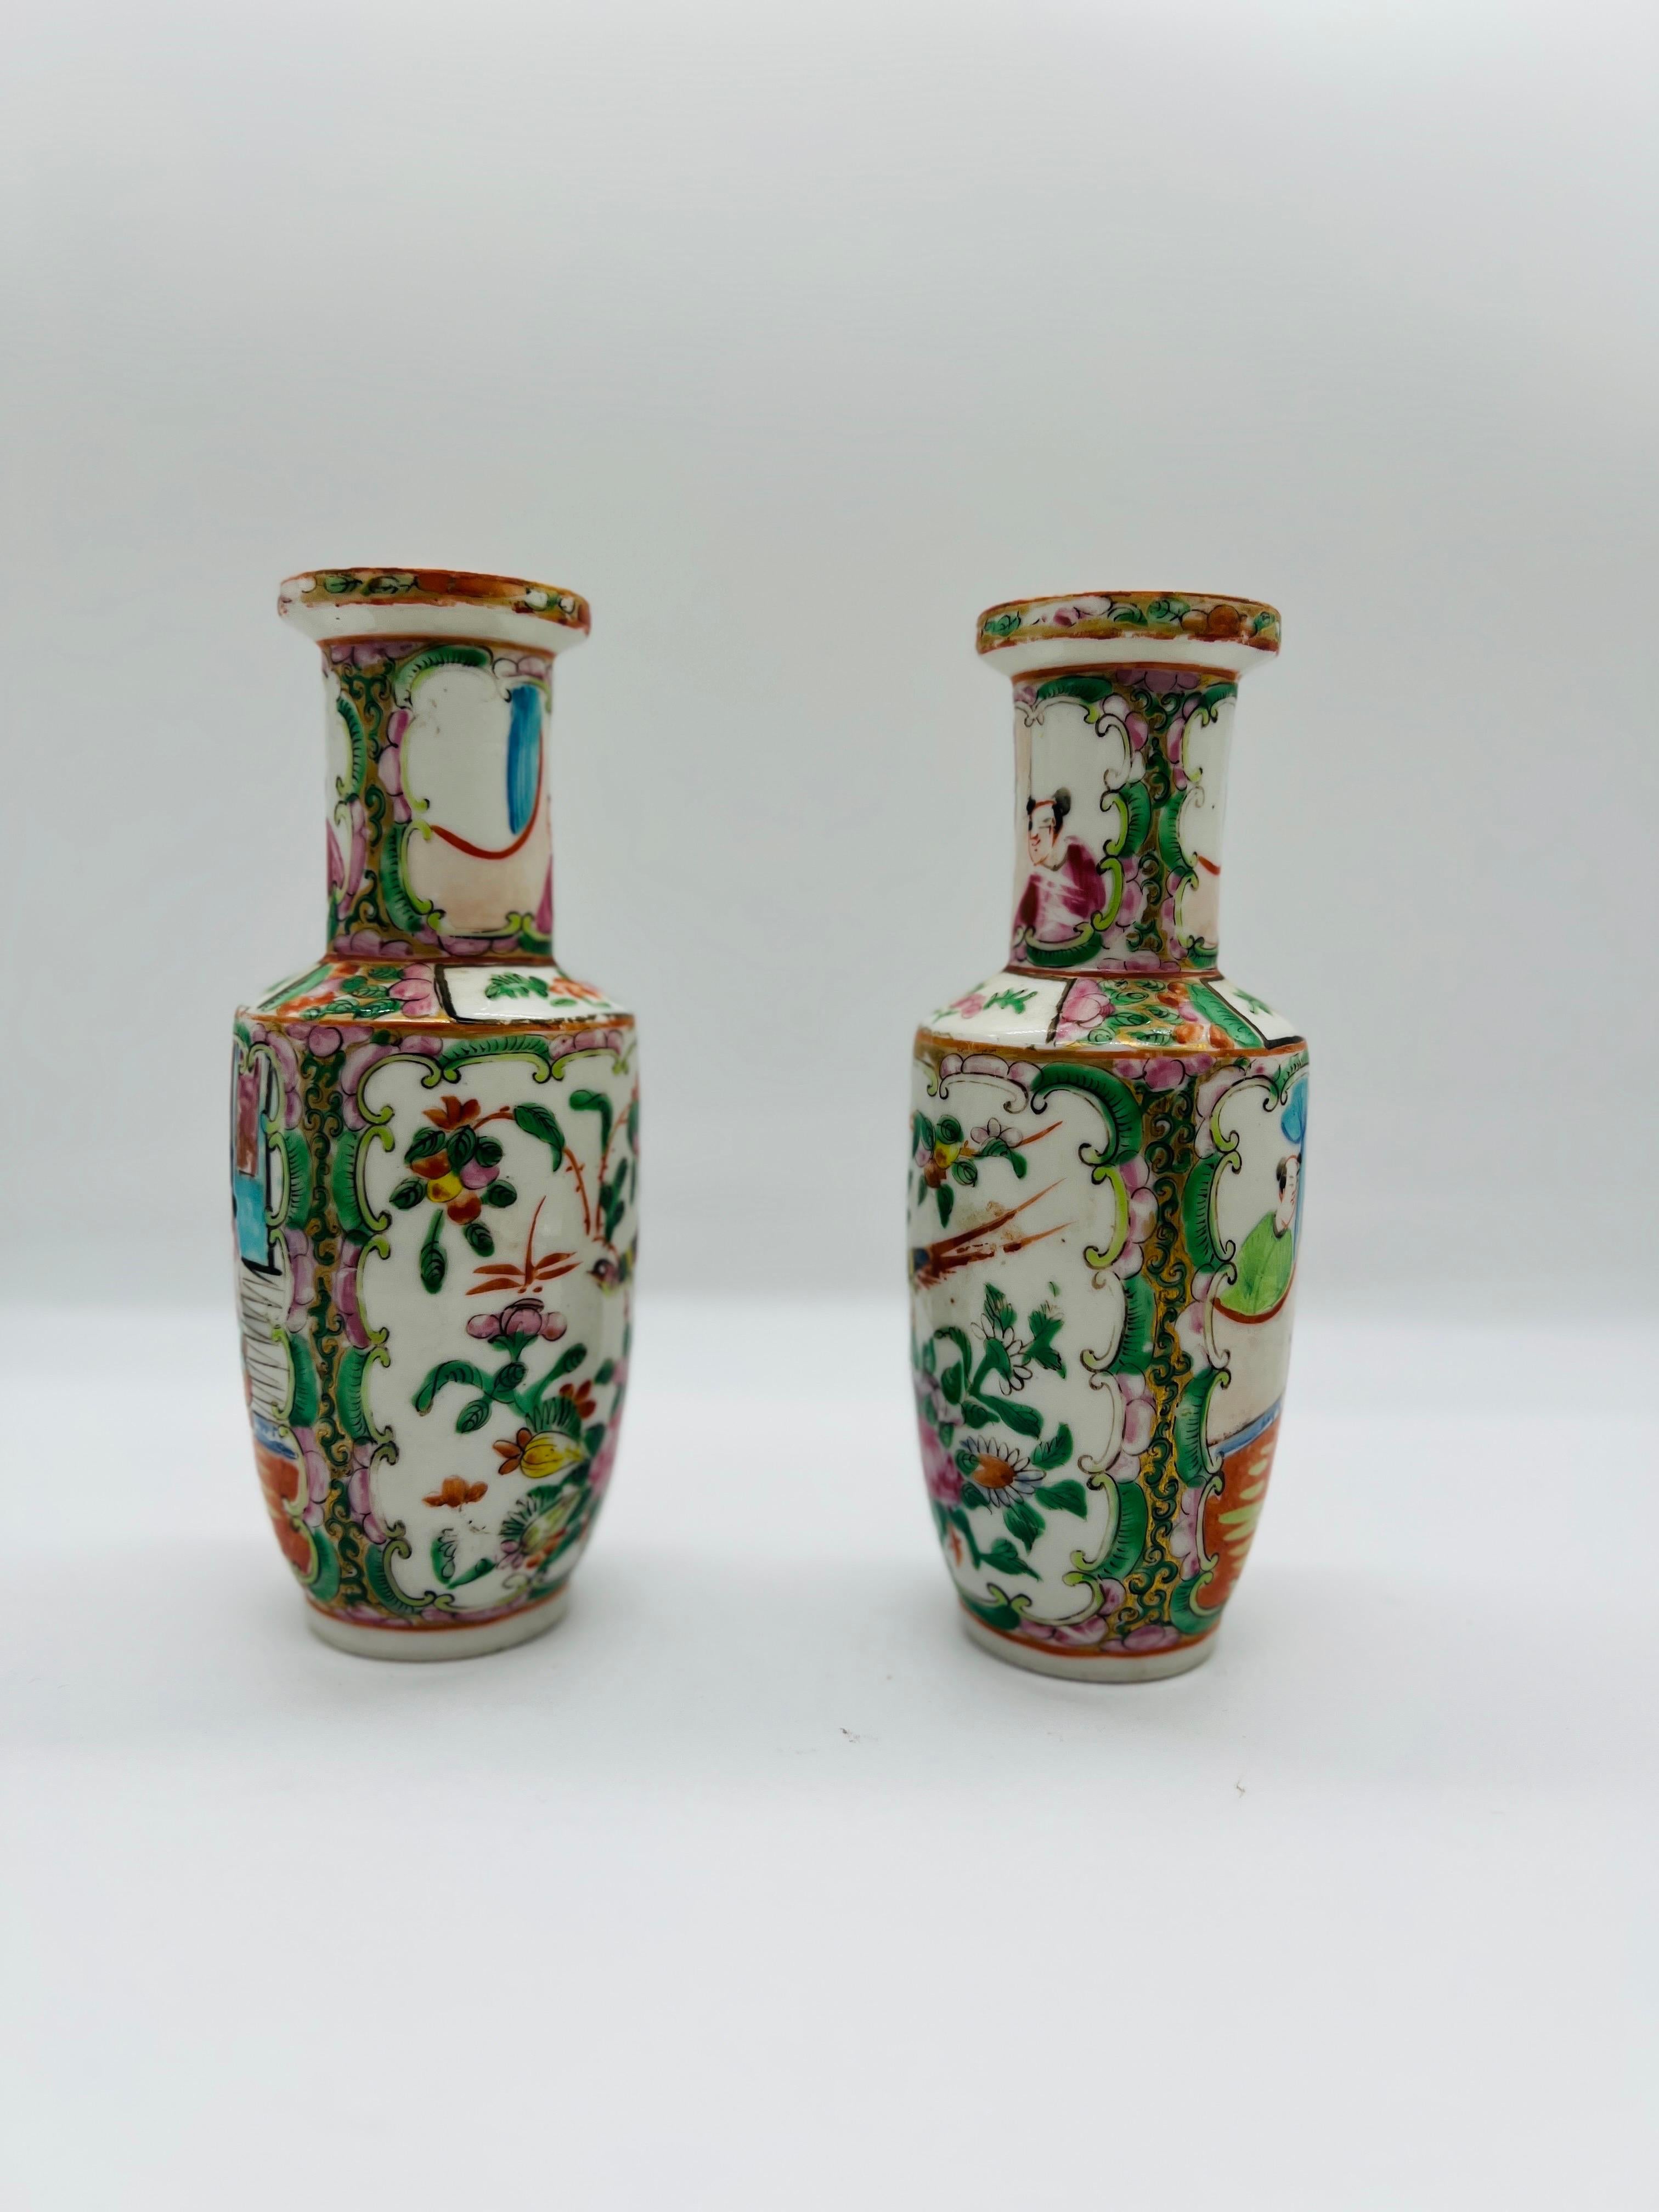 Chinois, 19e siècle.

Paire de vases chinois anciens du 19e siècle, décorés dans le motif médaillon de la Famille Rose. Chaque vase présente des motifs de fleurs et d'oiseaux d'un côté et des paysages traditionnels de gardiens de l'autre. Non marqué